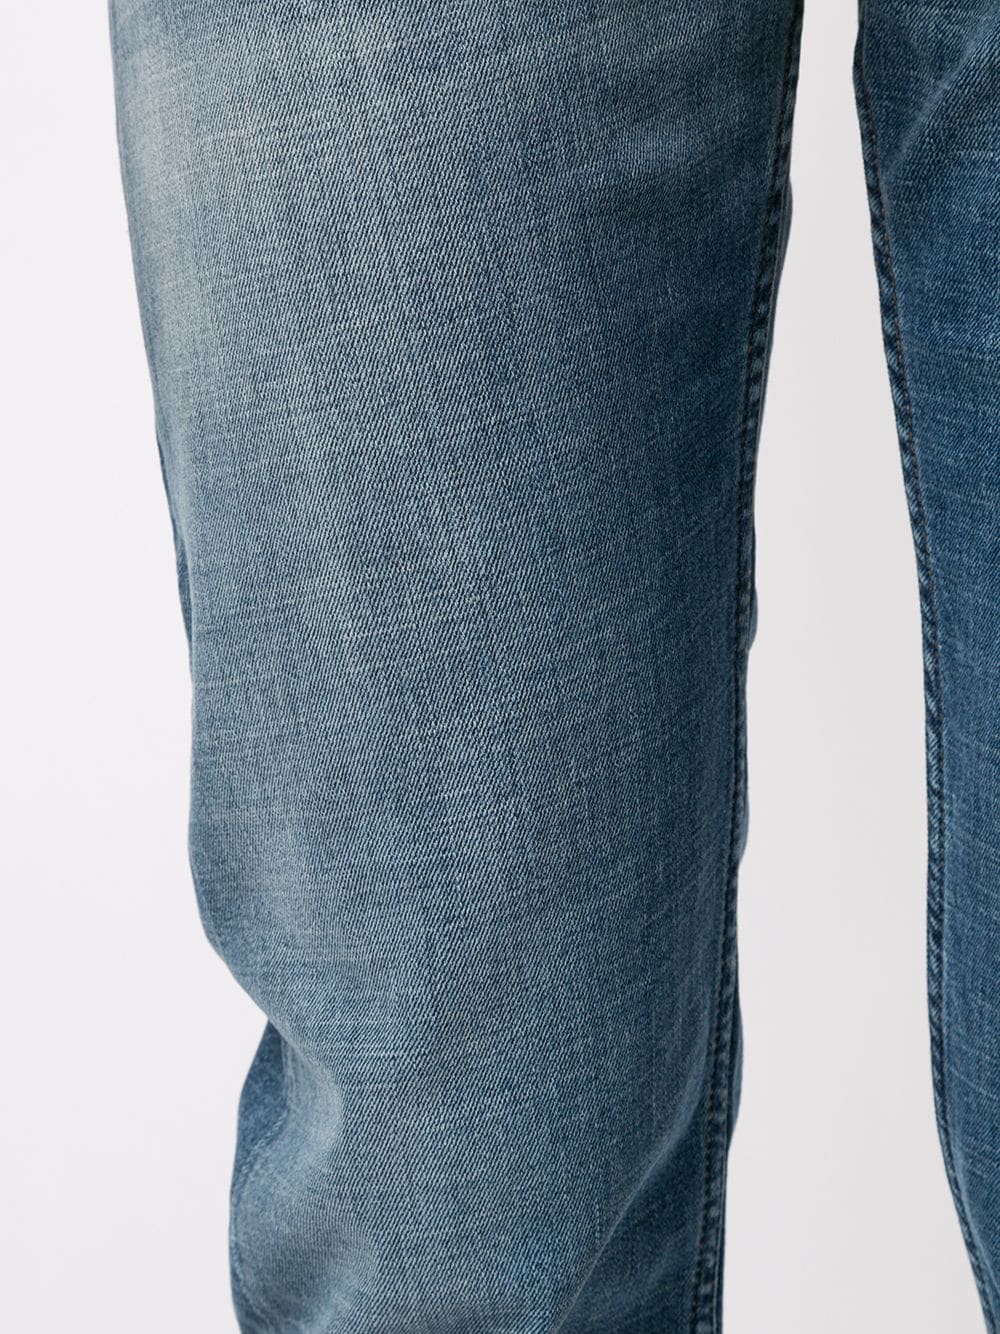 фото Brioni джинсы стандартного кроя